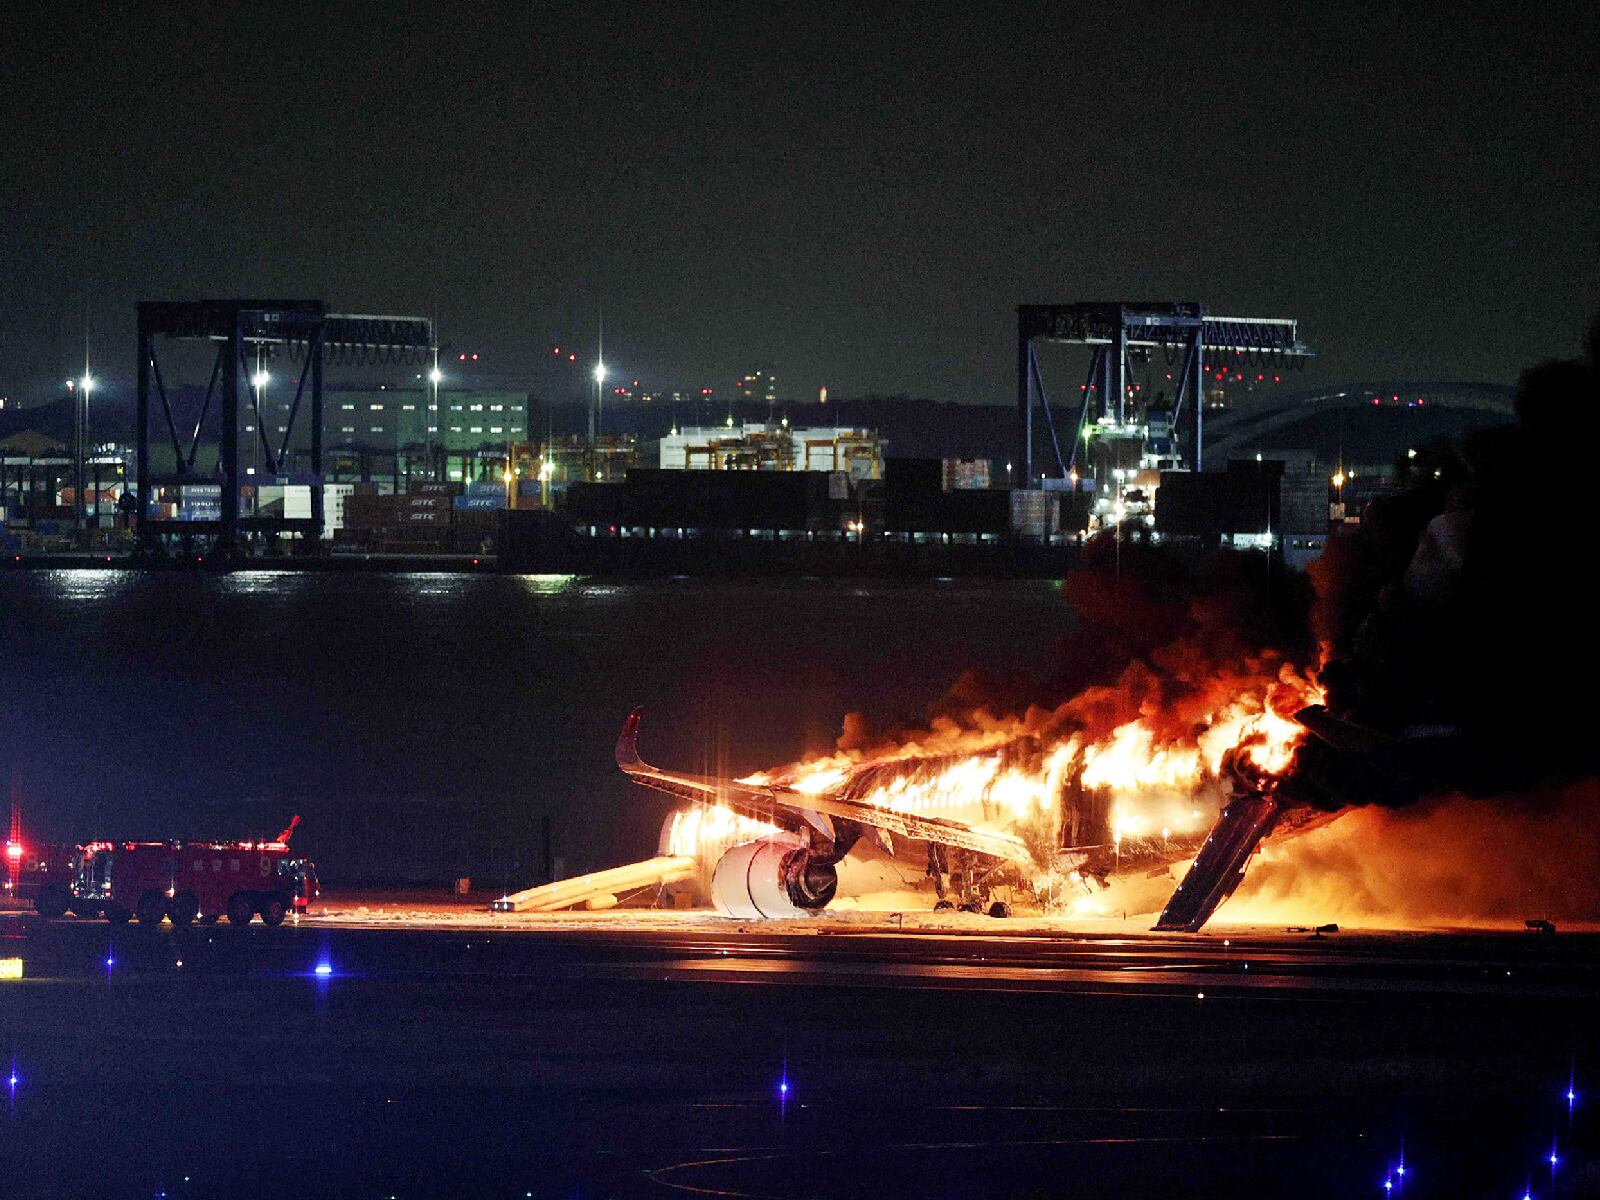 El avión no tardó en incendiarse, lo cual no tardó en encender las alarmas en el aeropuerto de Japón (Foto: STR / JIJI PRESS / AFP)